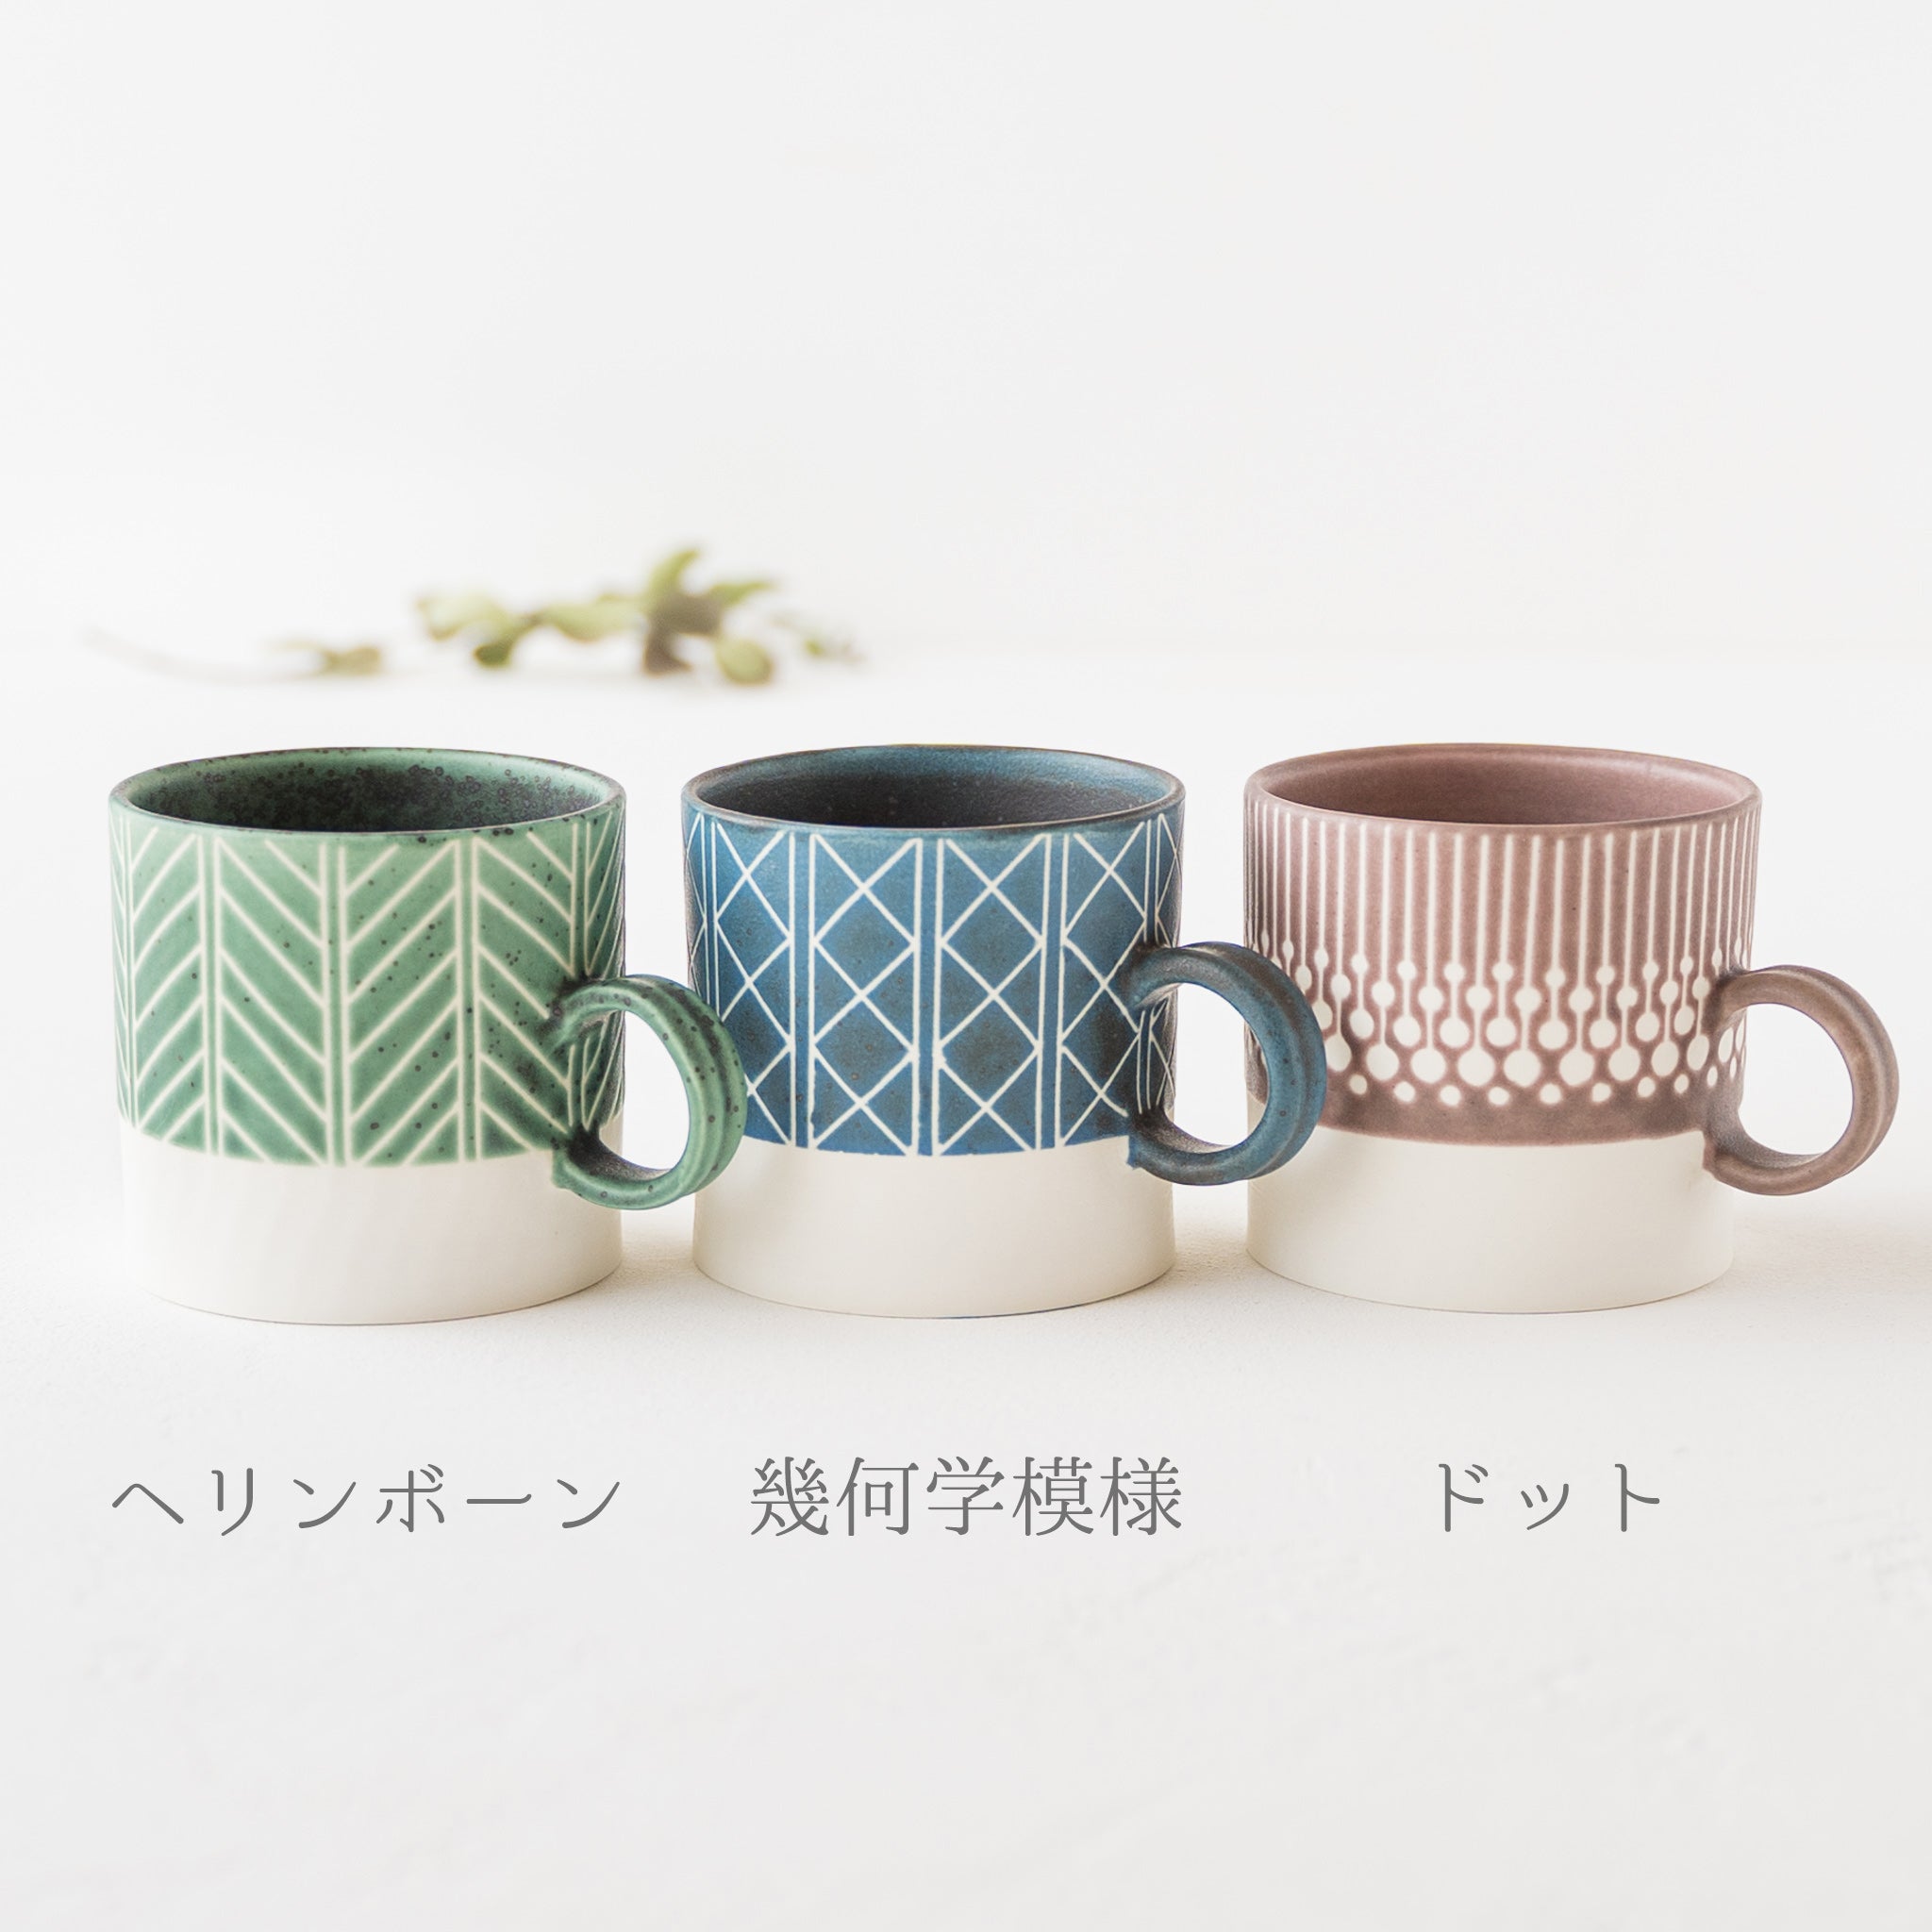 A mug by Yukari Nakagawa that will captivate you with its stylish design